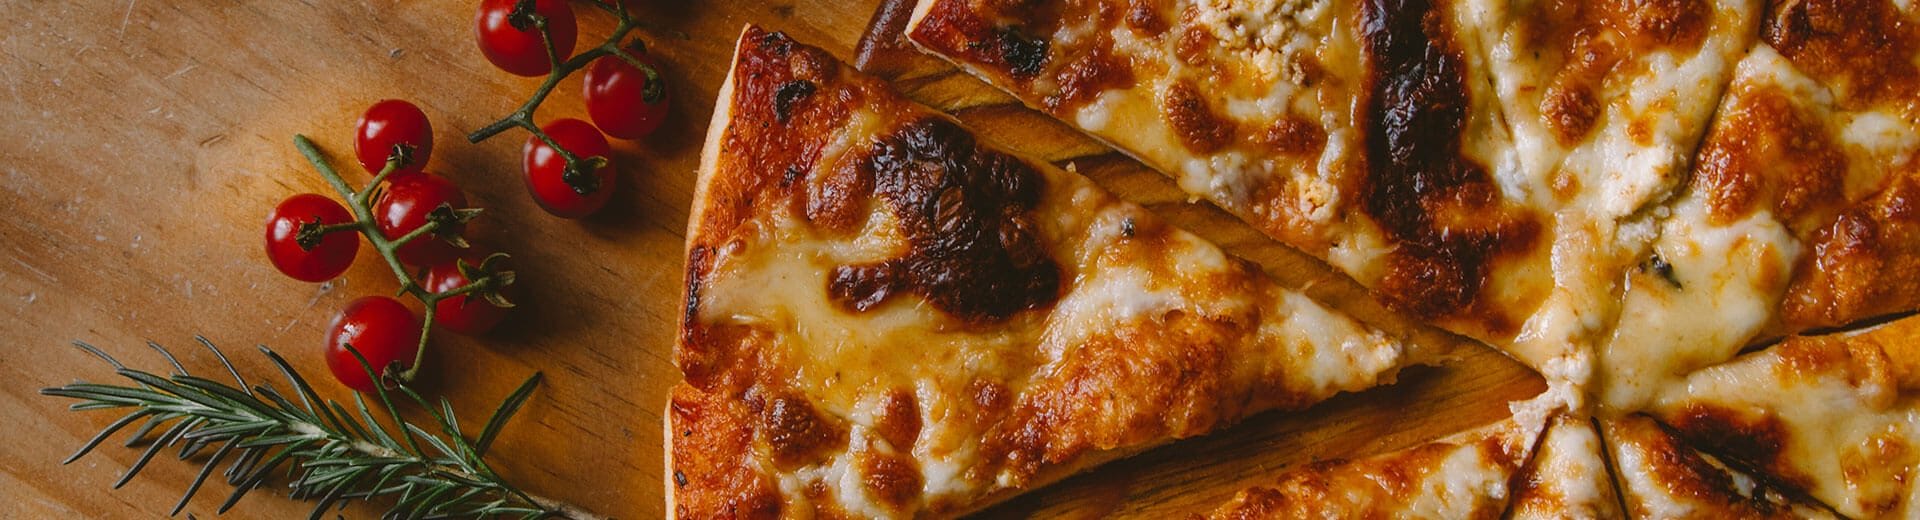 Come valutare una pizza, consigli pratici per gustarla al meglio